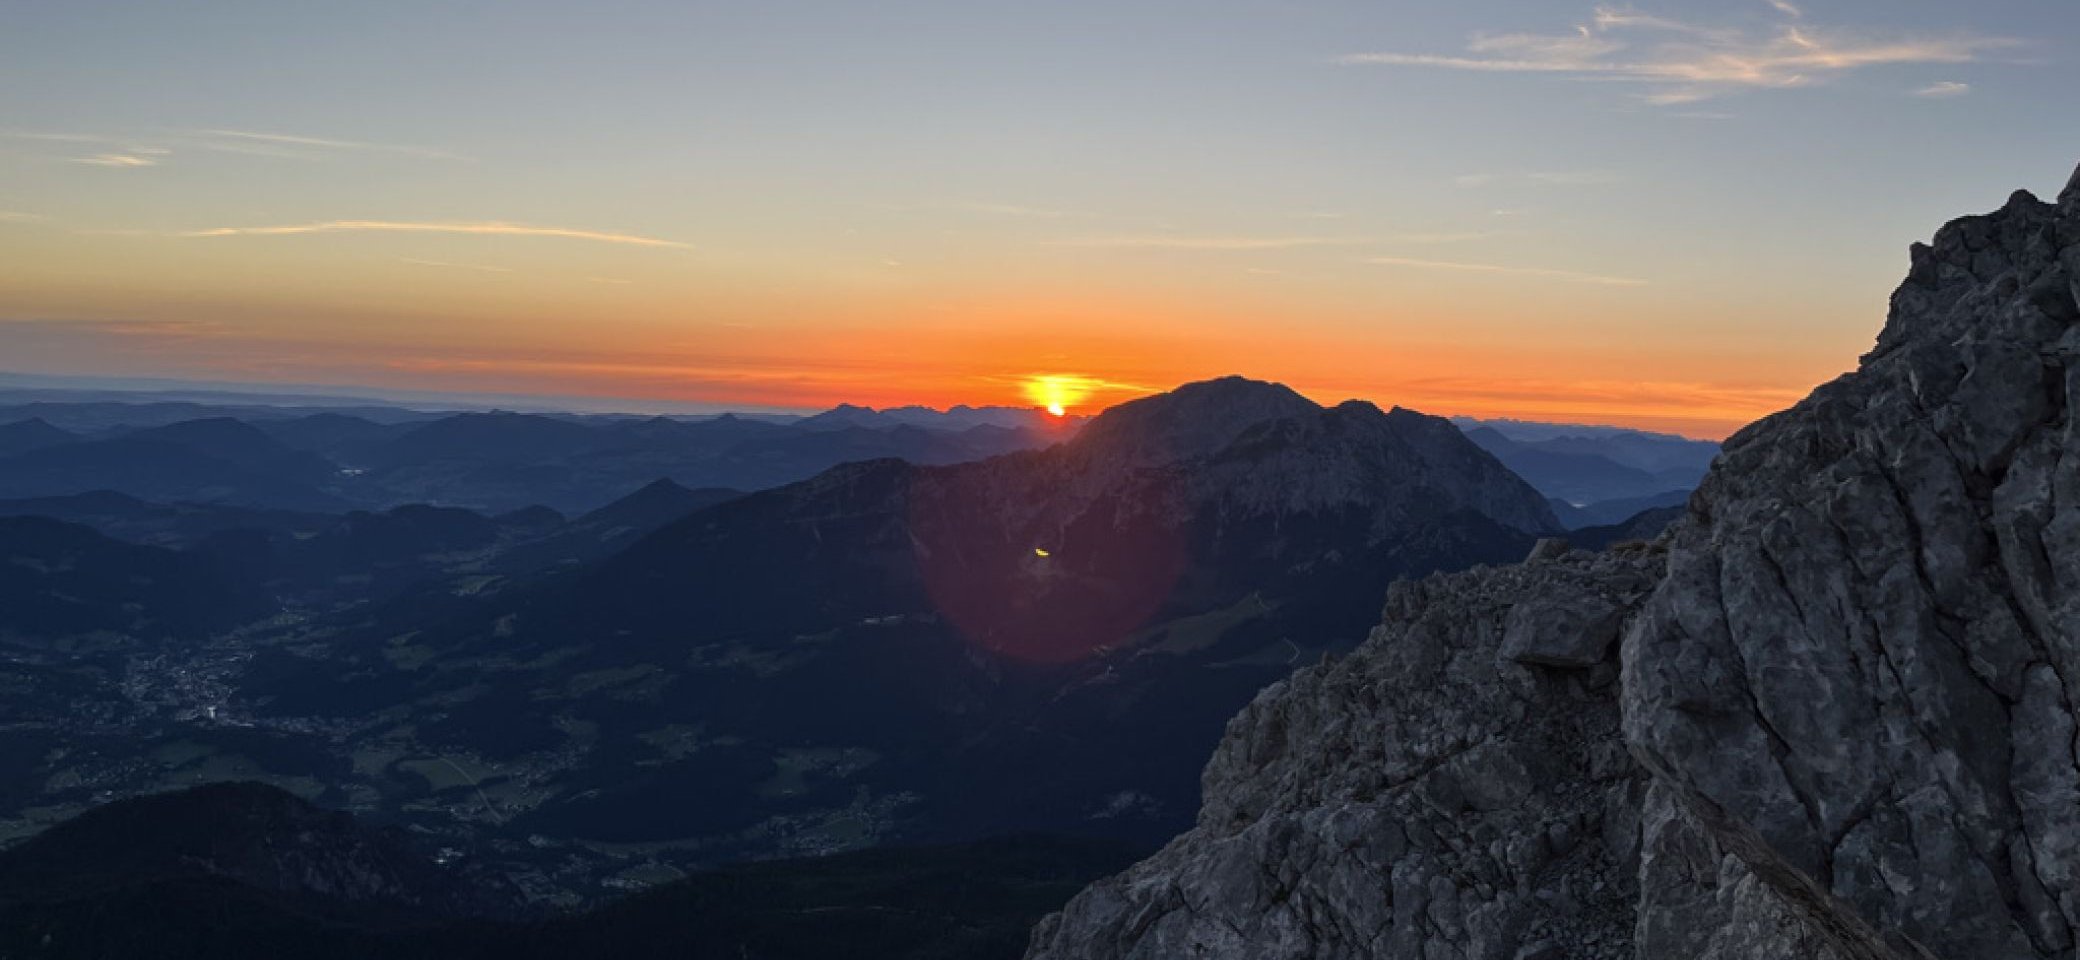 SonnenaufgangWatzmann | © Dirk Kehr